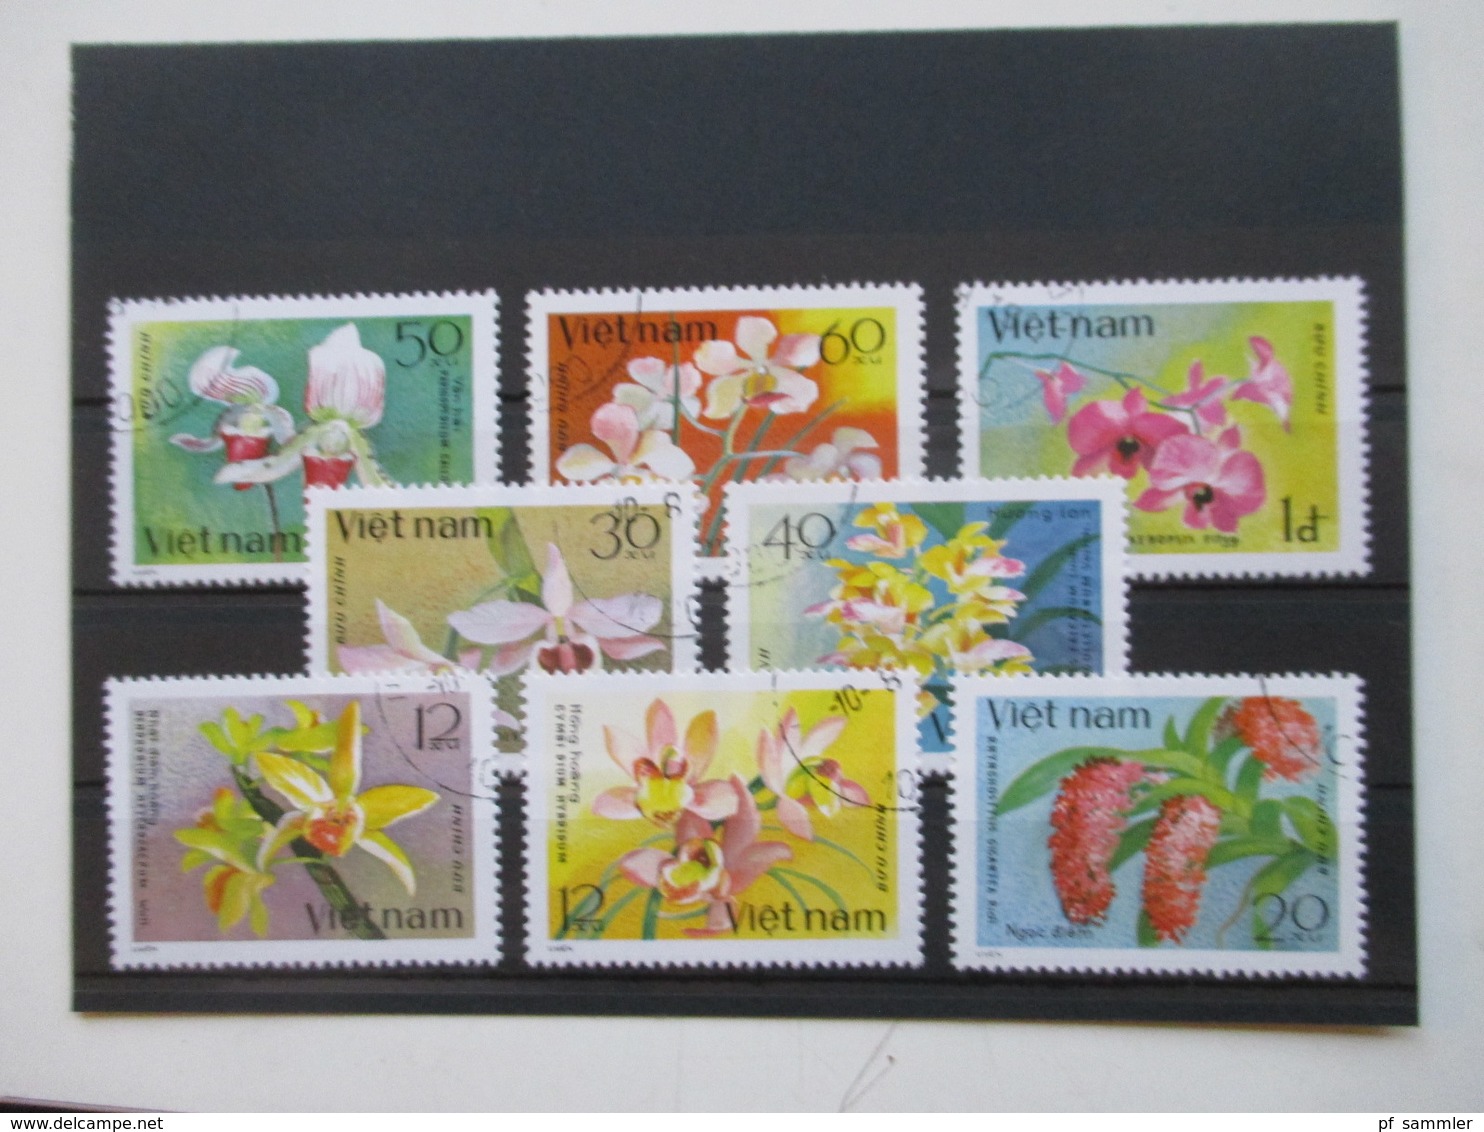 Vietnam hunderte gestempelte Marken auf 23 Steckkarten! 1960er -90er Jahre! Auch 3 Blocks /viele tolle Motive! Fundgrube